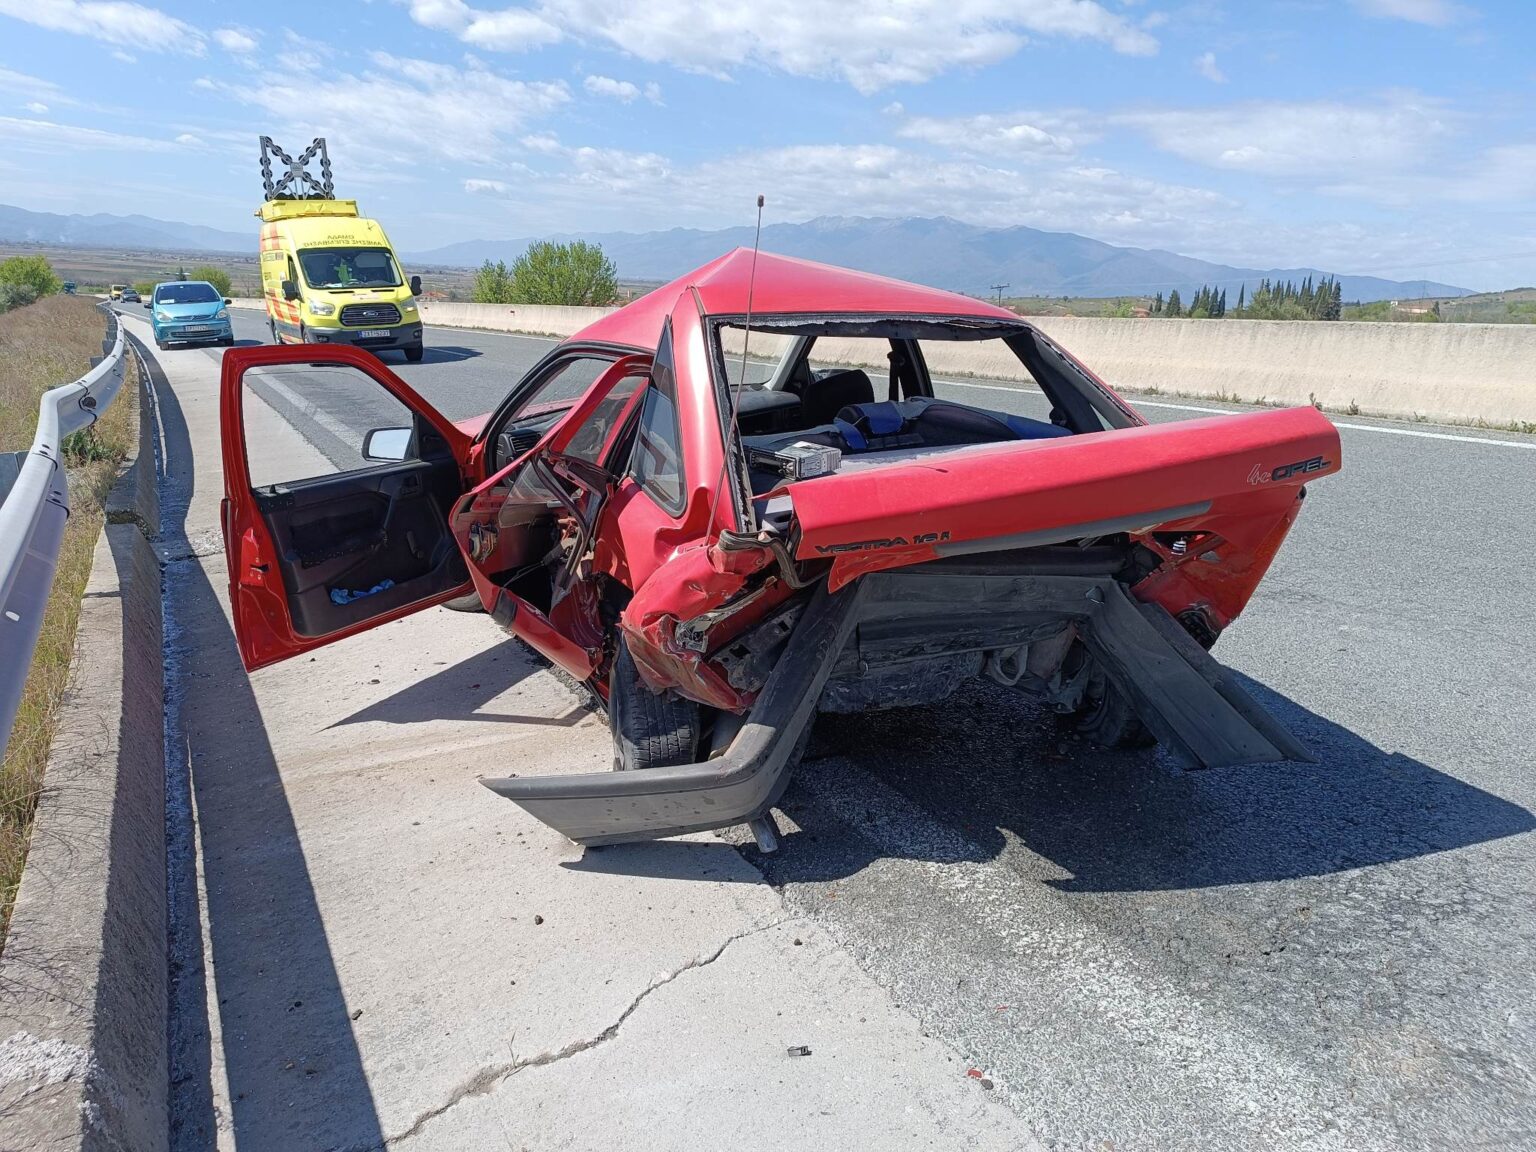 Σέρρες: Σύγκρουση δύο οχημάτων στην Εγνατία Οδό – Ένας τραυματίας (ΦΩΤΟ)